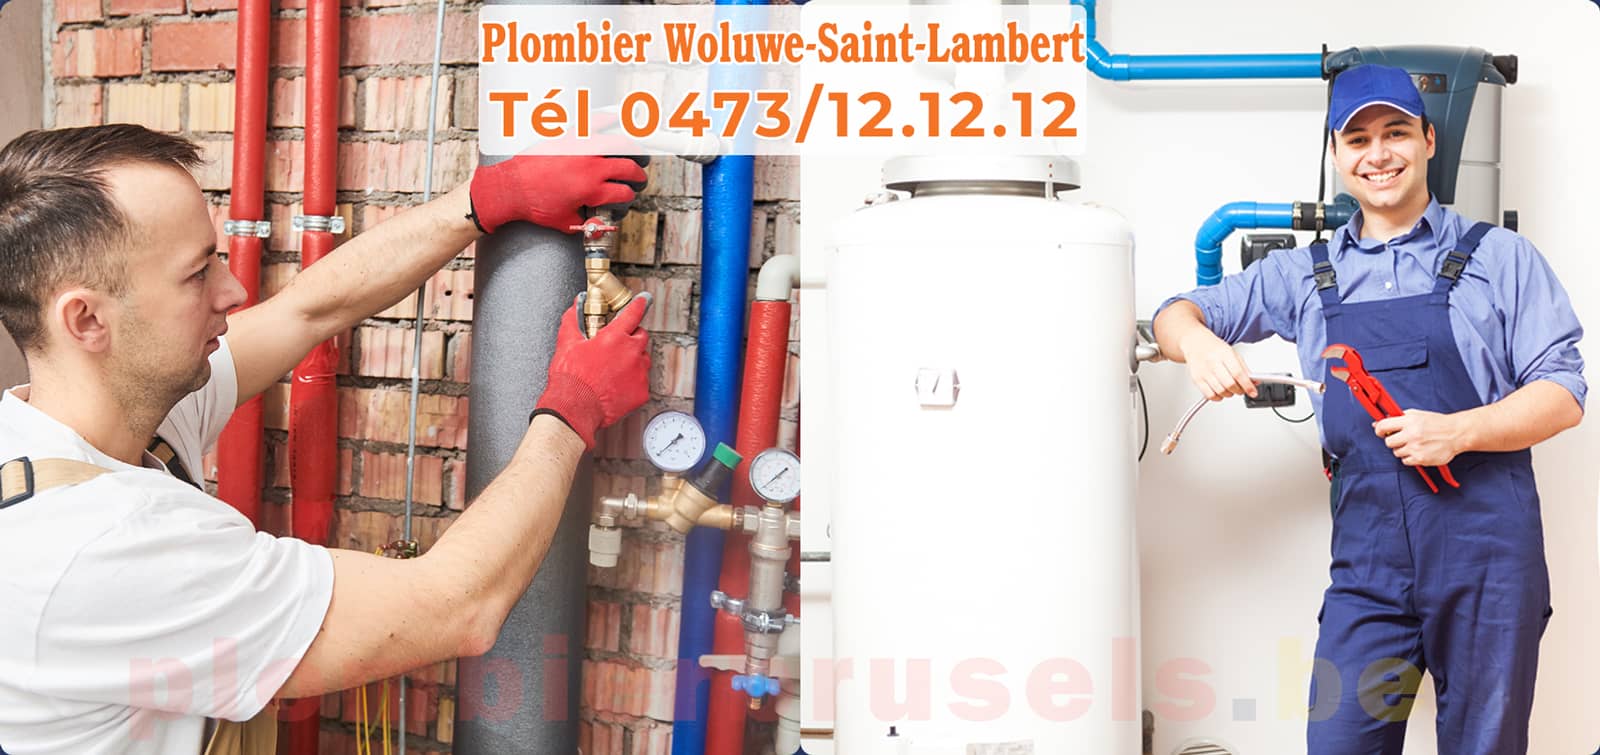 Plombier Woluwe-Saint-Lambert service de Plomberie tél 0473/12.12.12